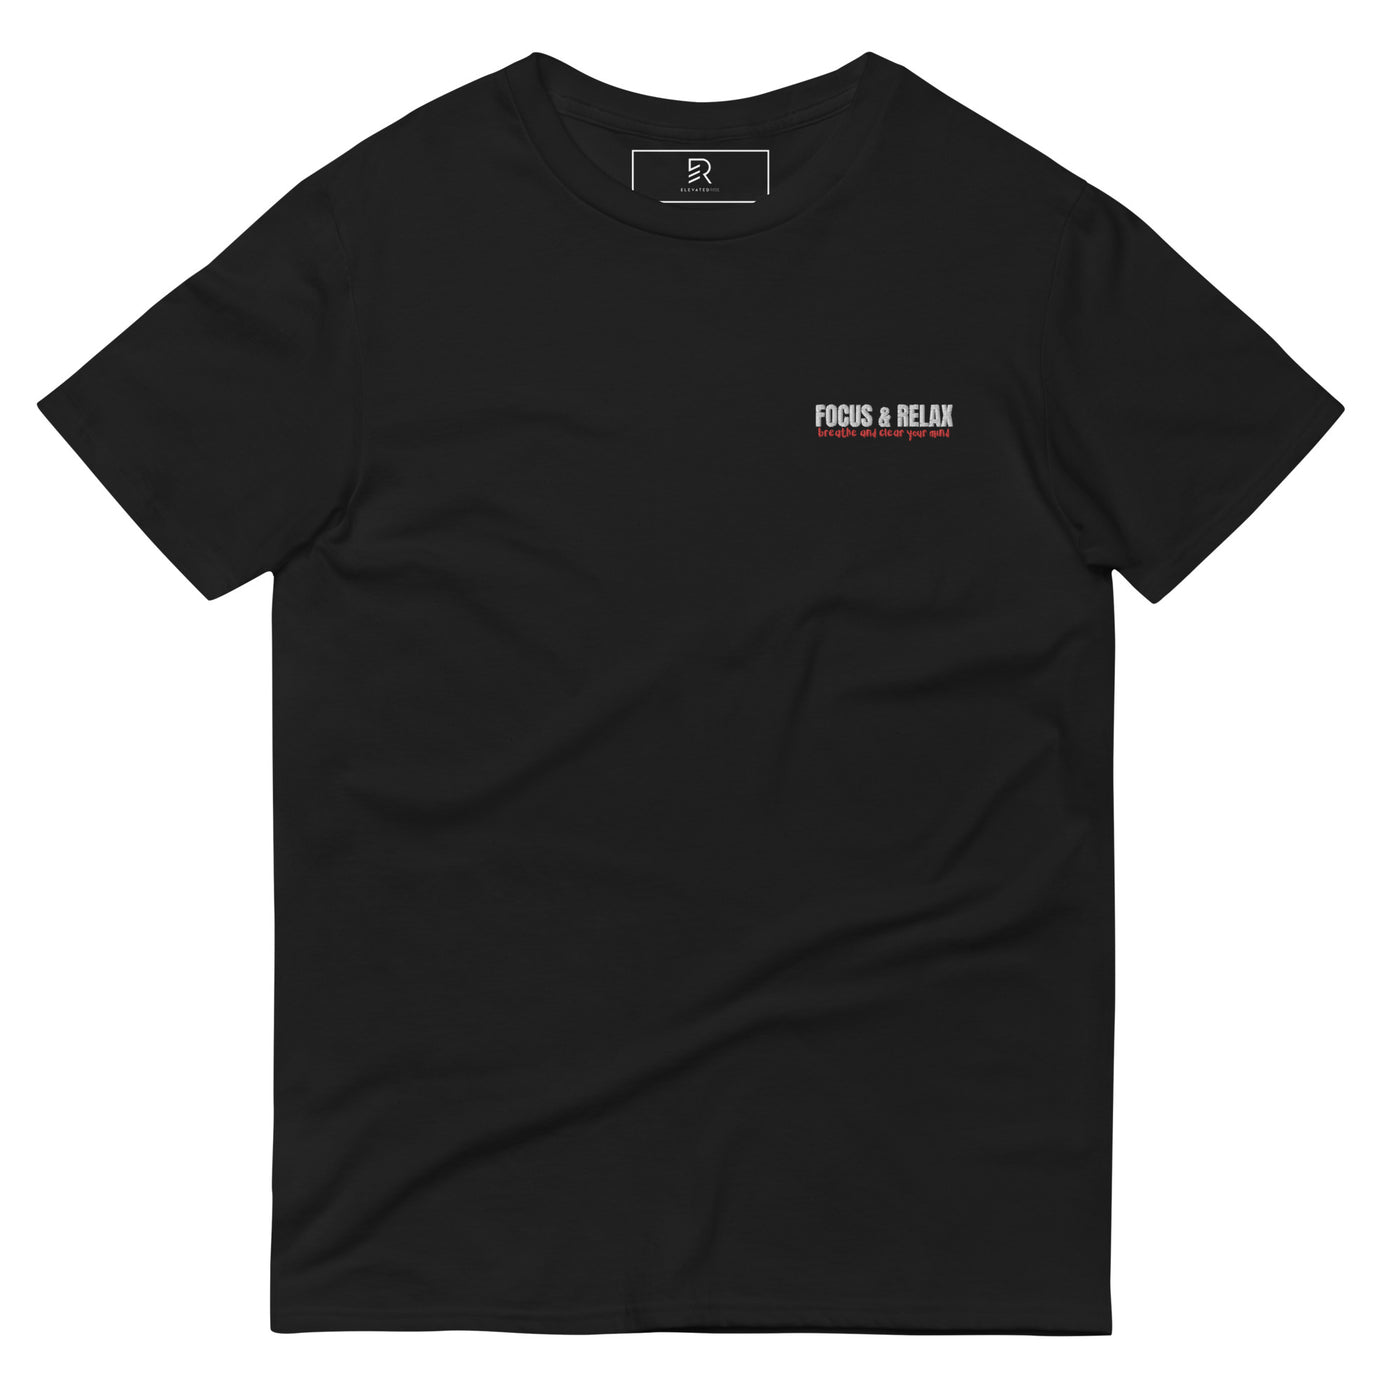 Men's Black Embroidered Lightweight T-Shirt - Focus & Relax